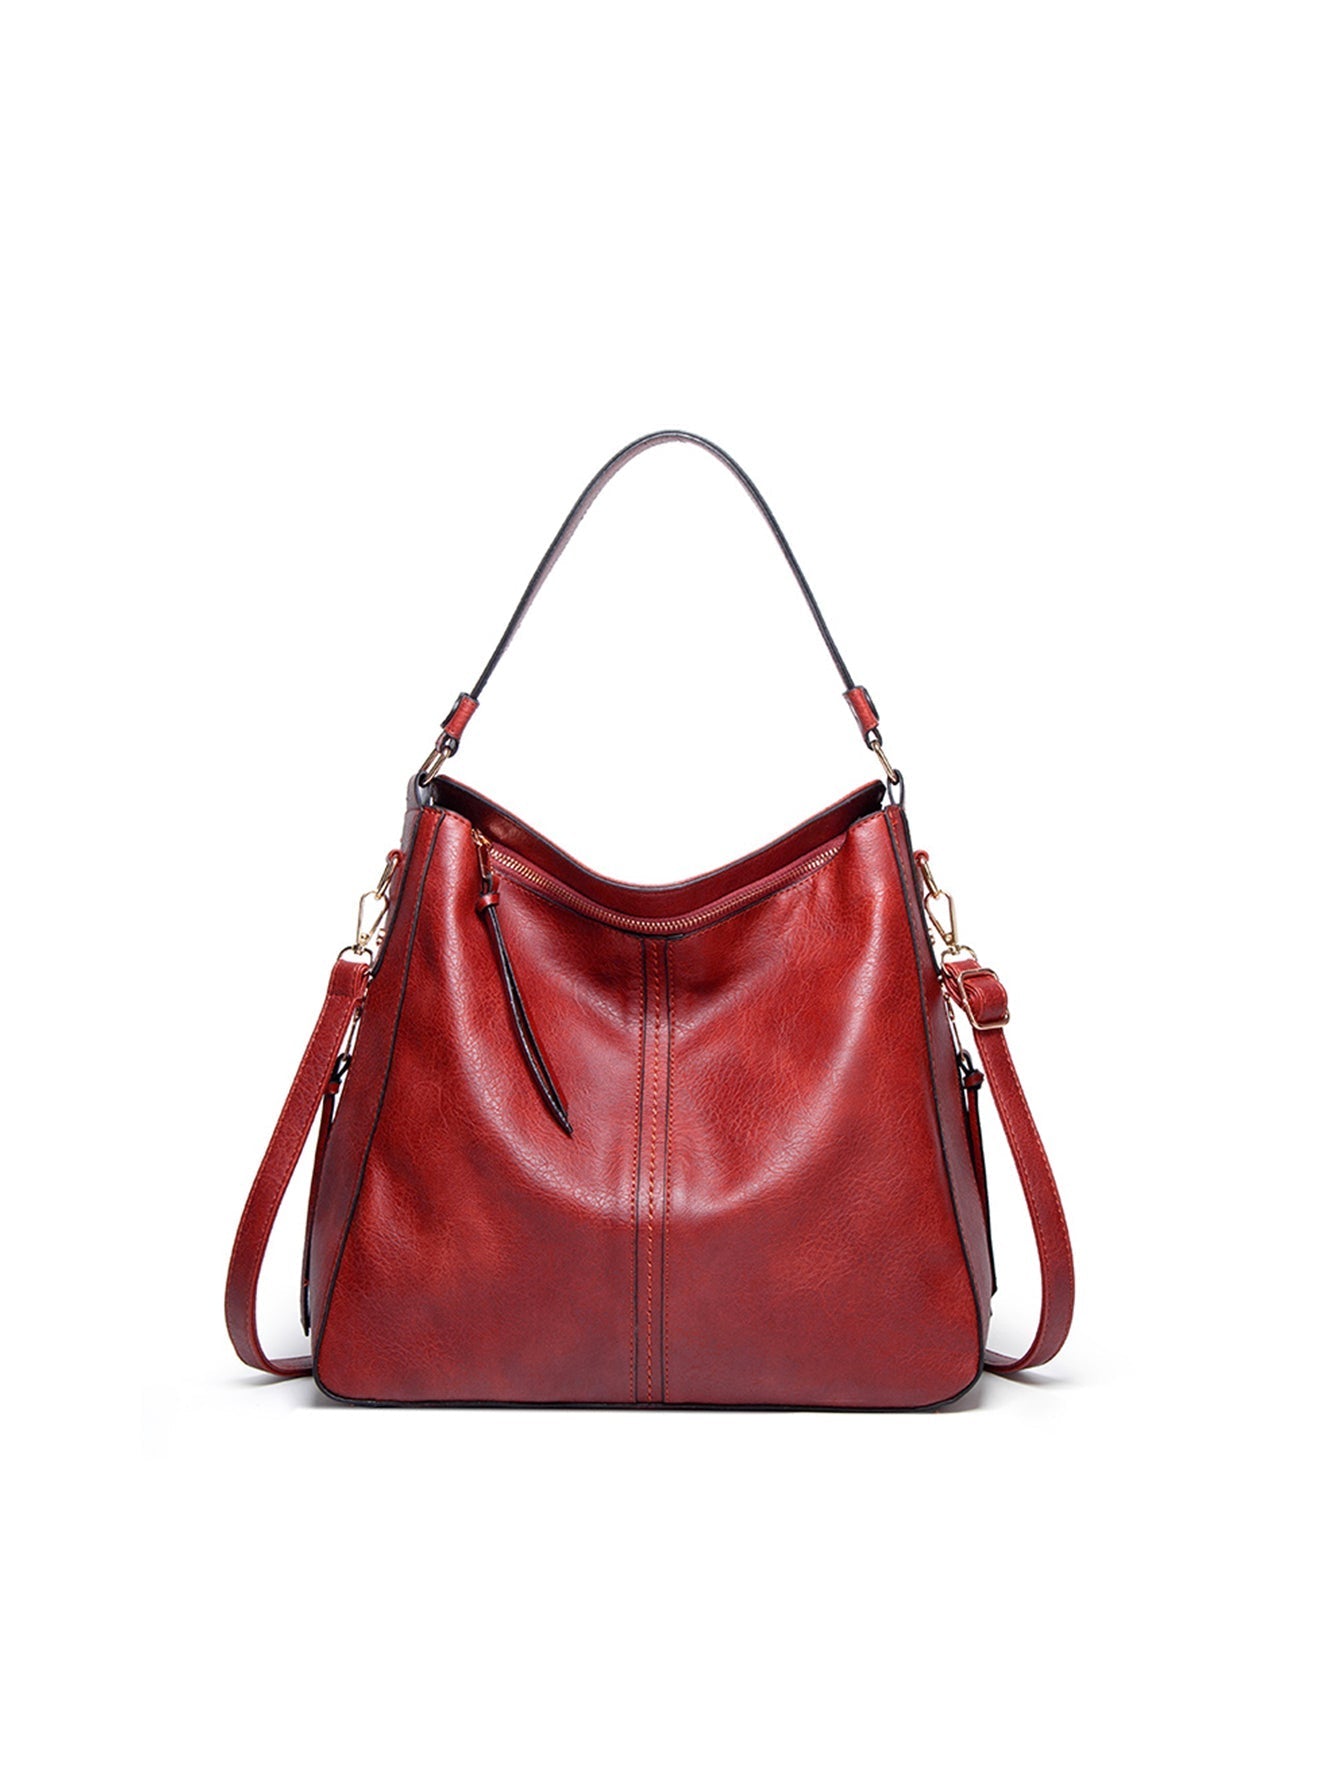 Women Shoulder Bags Tote Handbags Large Capacity Bags Sai Feel